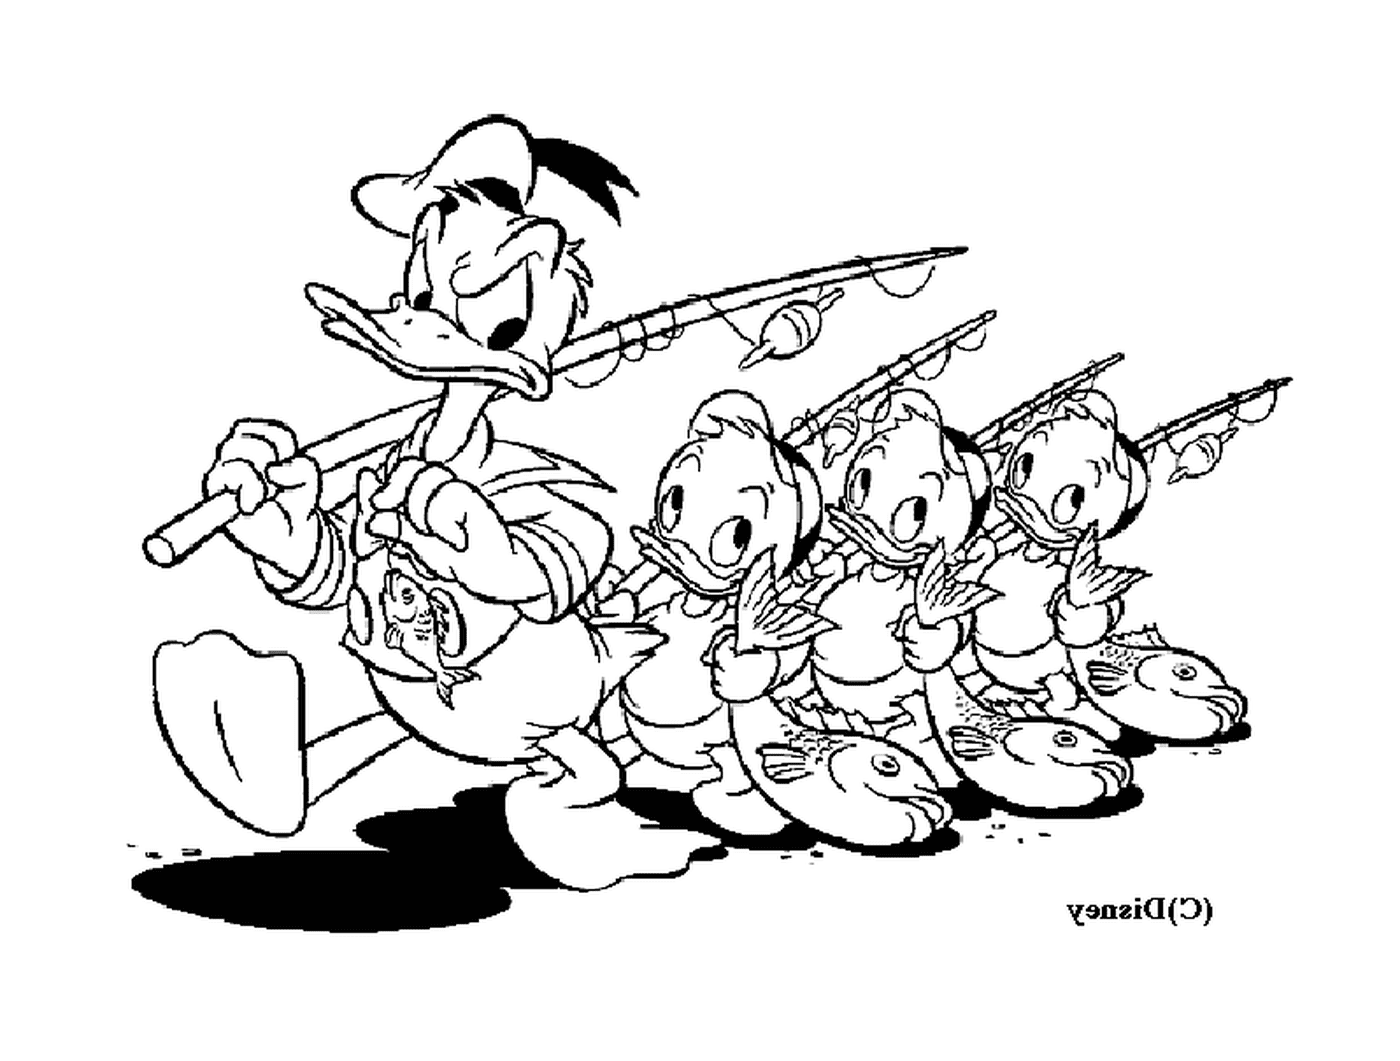  Donald und seine Neffen fischen mit Freude 